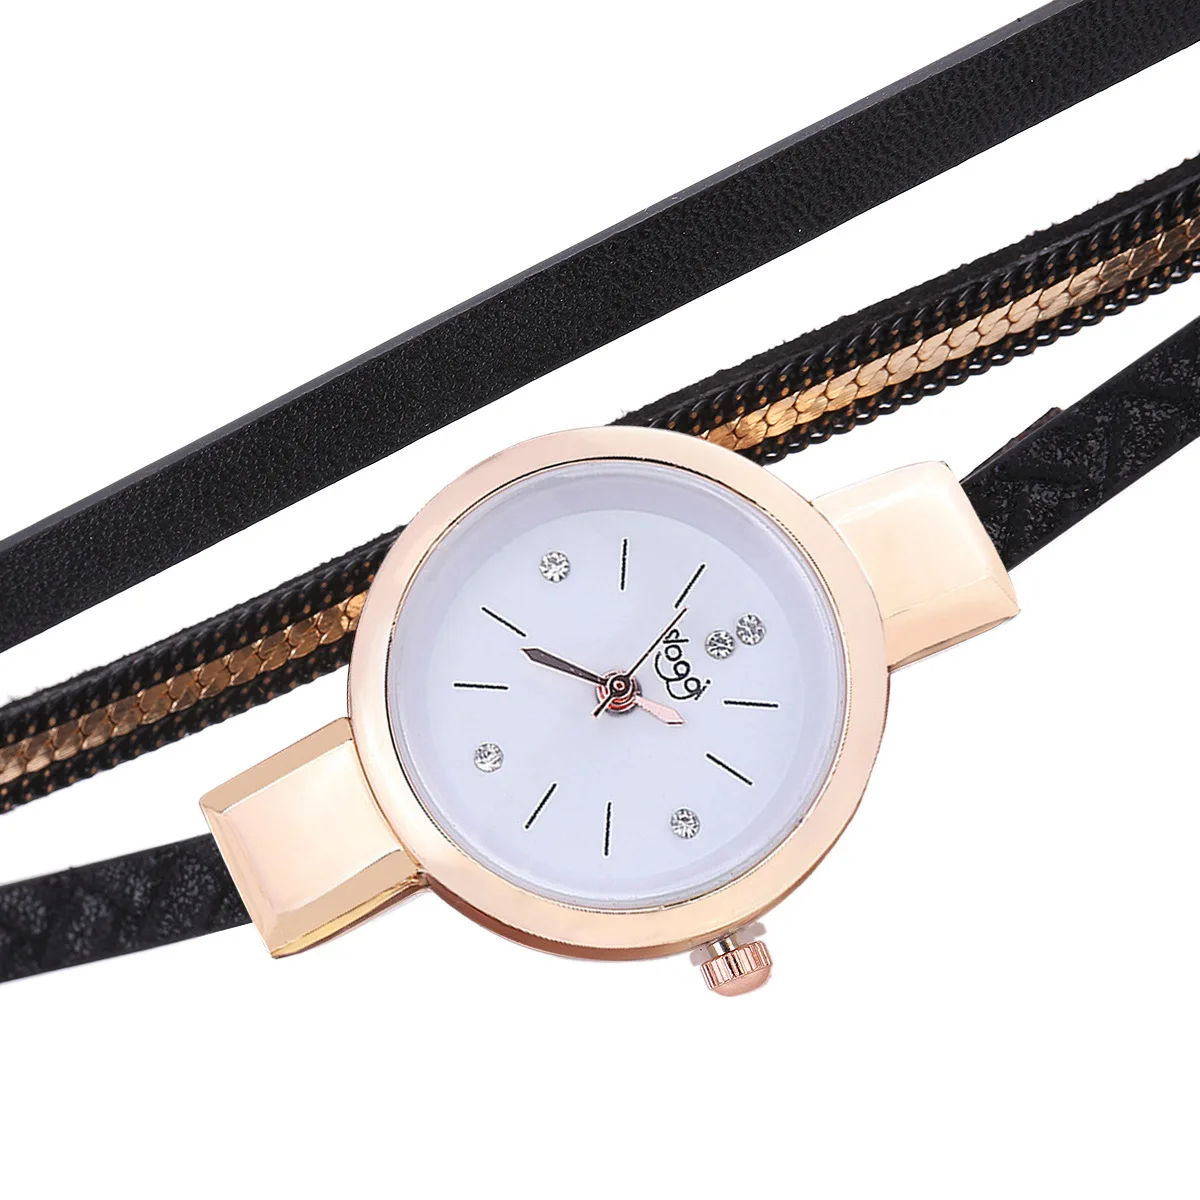 SLOGGI Роскошные Брендовые Часы для женщин Мода Золотой браслет часы дамы повседневное кожа фирменные кварцевые наручные часы montre femme